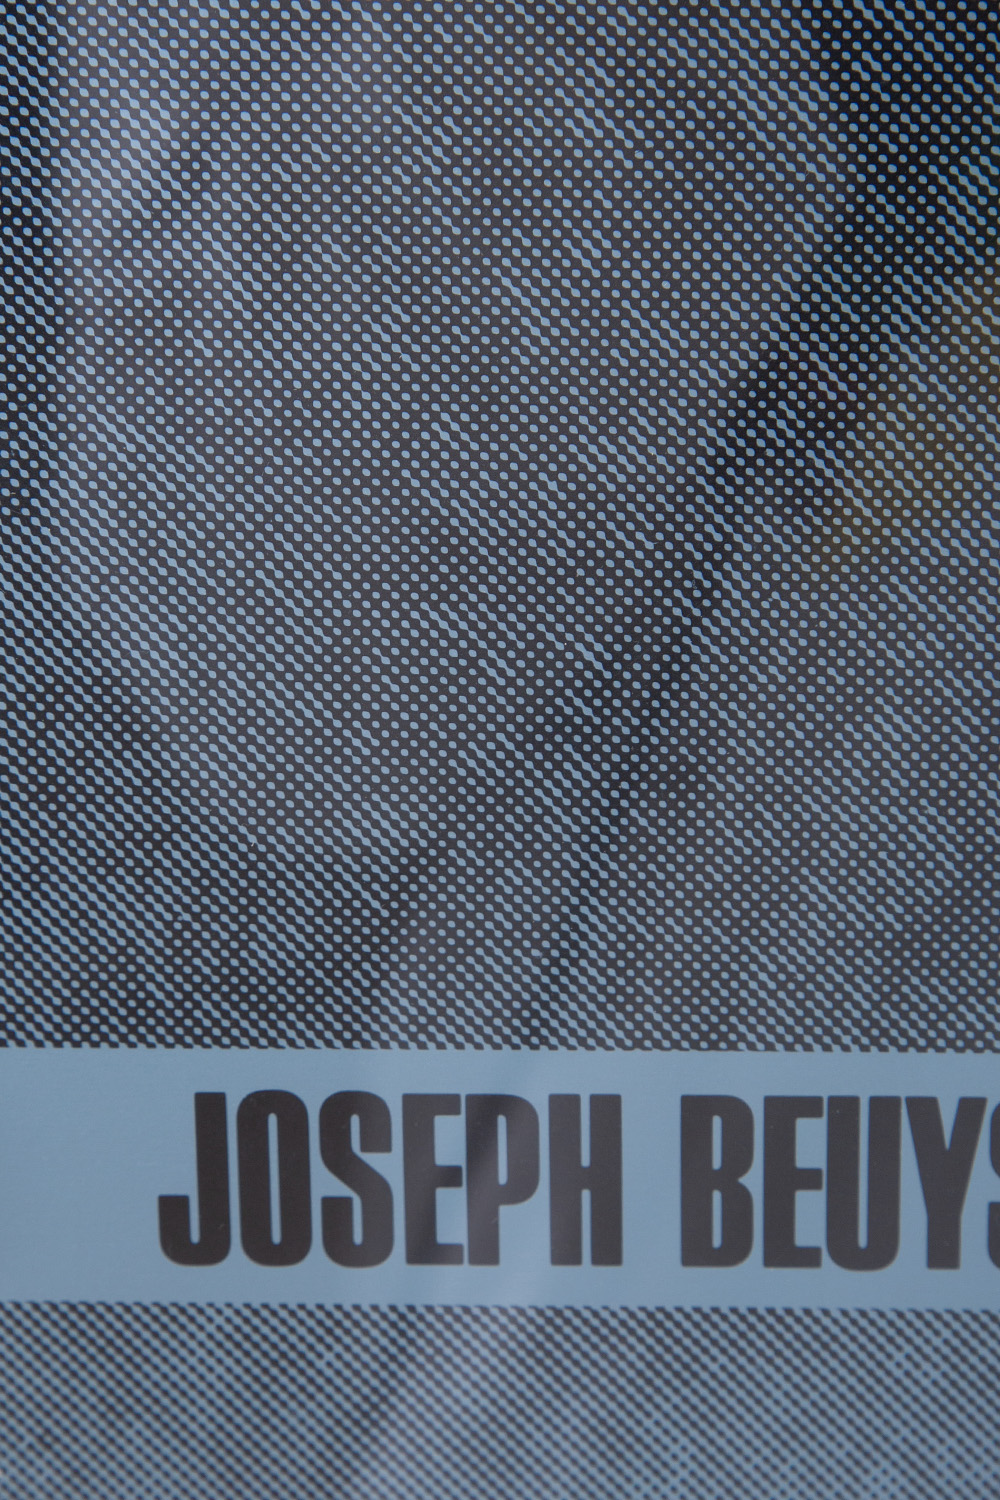 ‘EIN-STEIN-ZEIT’ by Joseph Beuys for ‘7000 EICHEN’ Exhibition , 1984